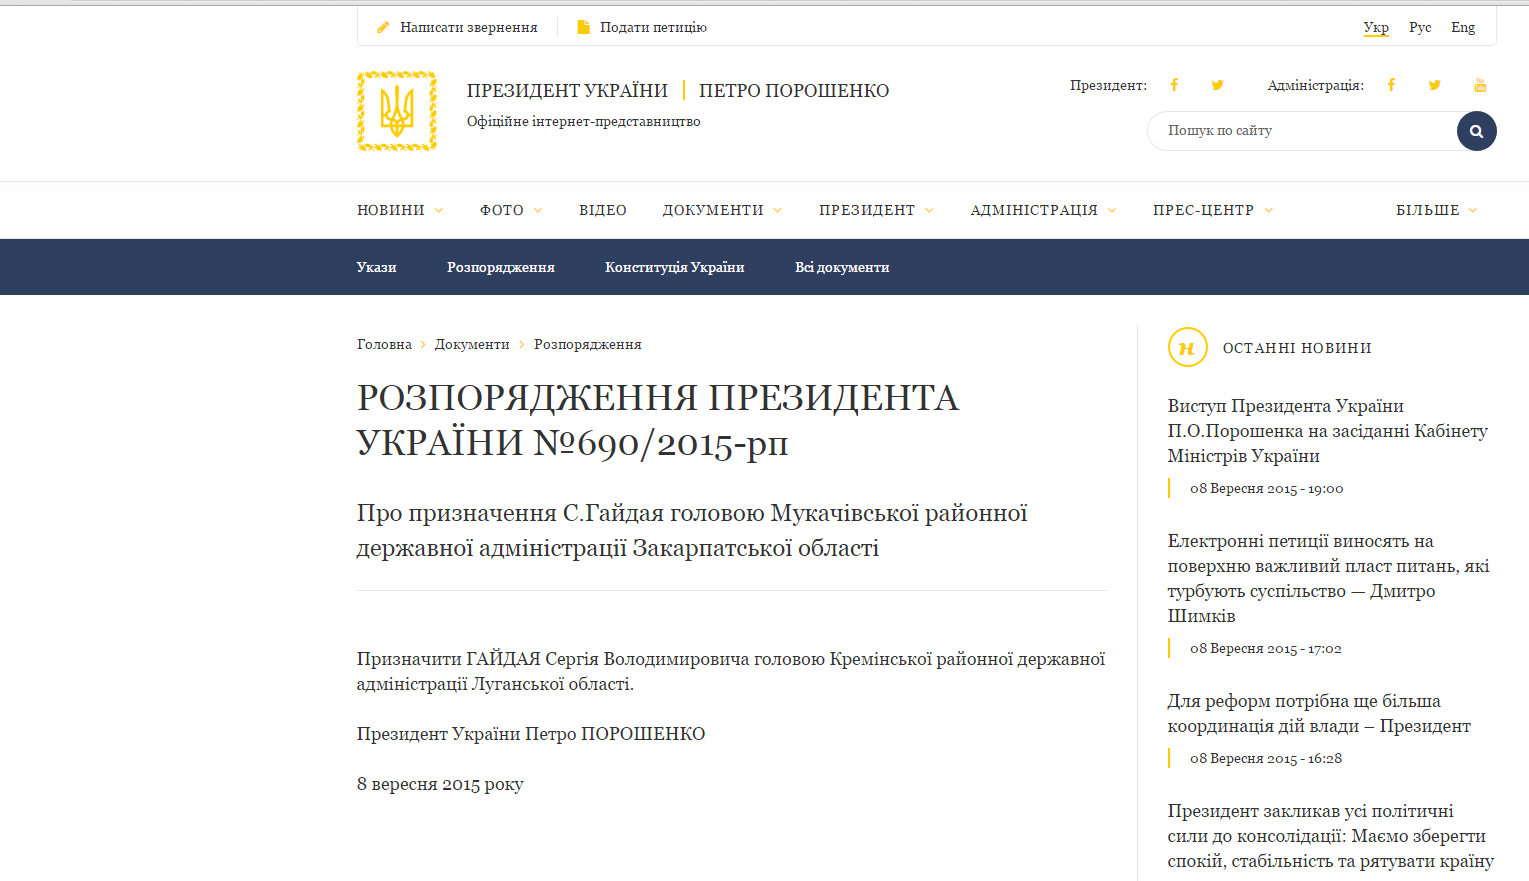 З’явилося офіційне розпорядження Президента України щодо призначення Сергія Гайдая головою РДА. Проте, якої саме адміністрації наразі не зрозуміло.